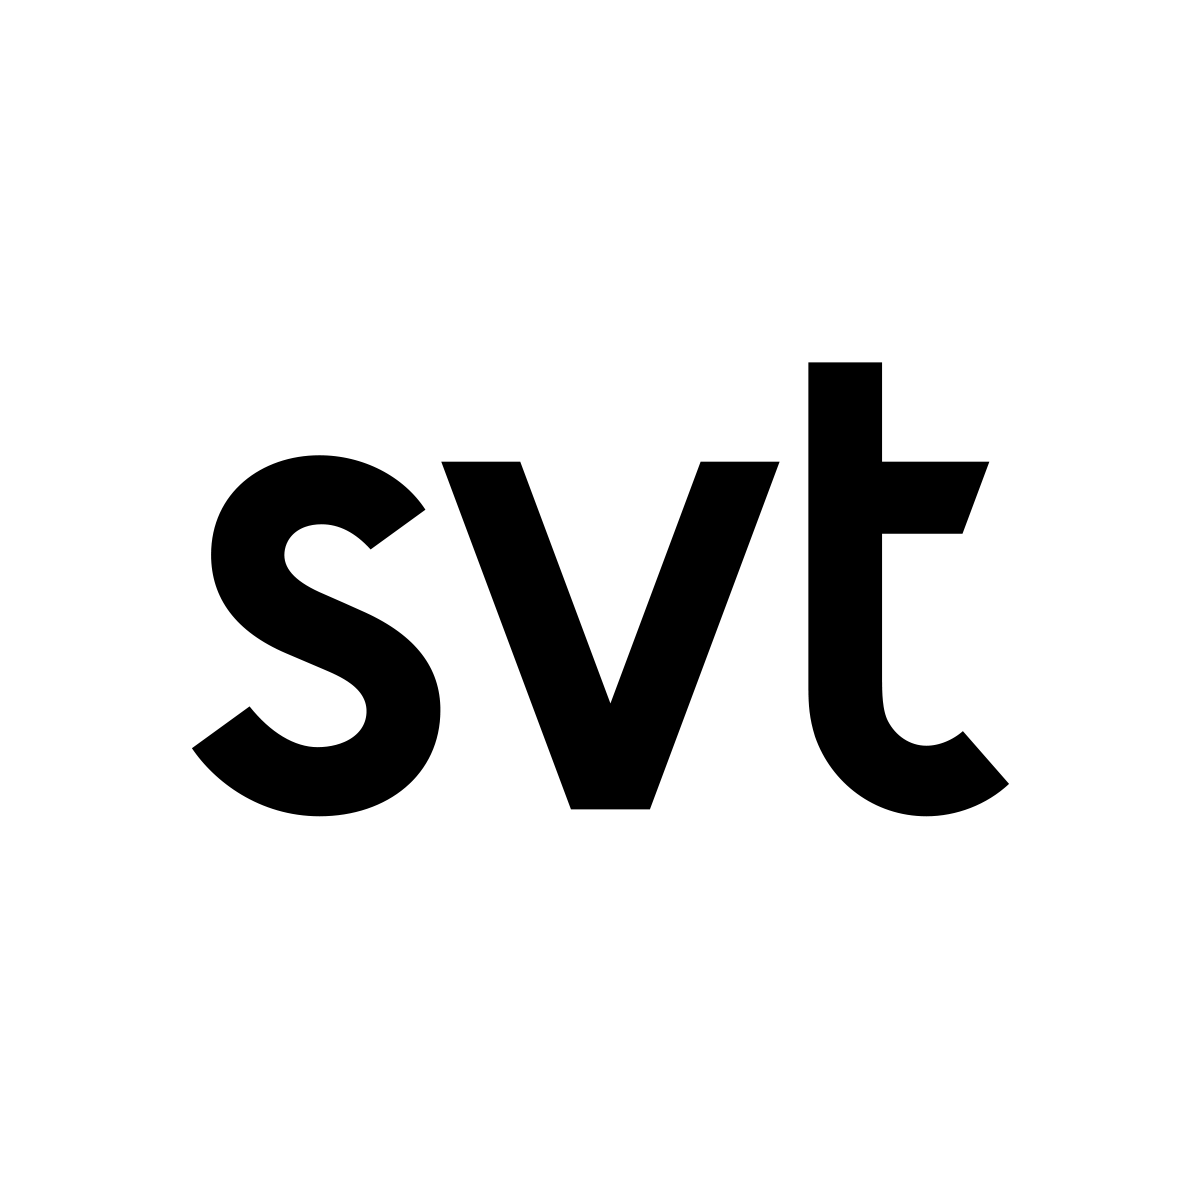 Ny logotyp för SVT - Sveriges television